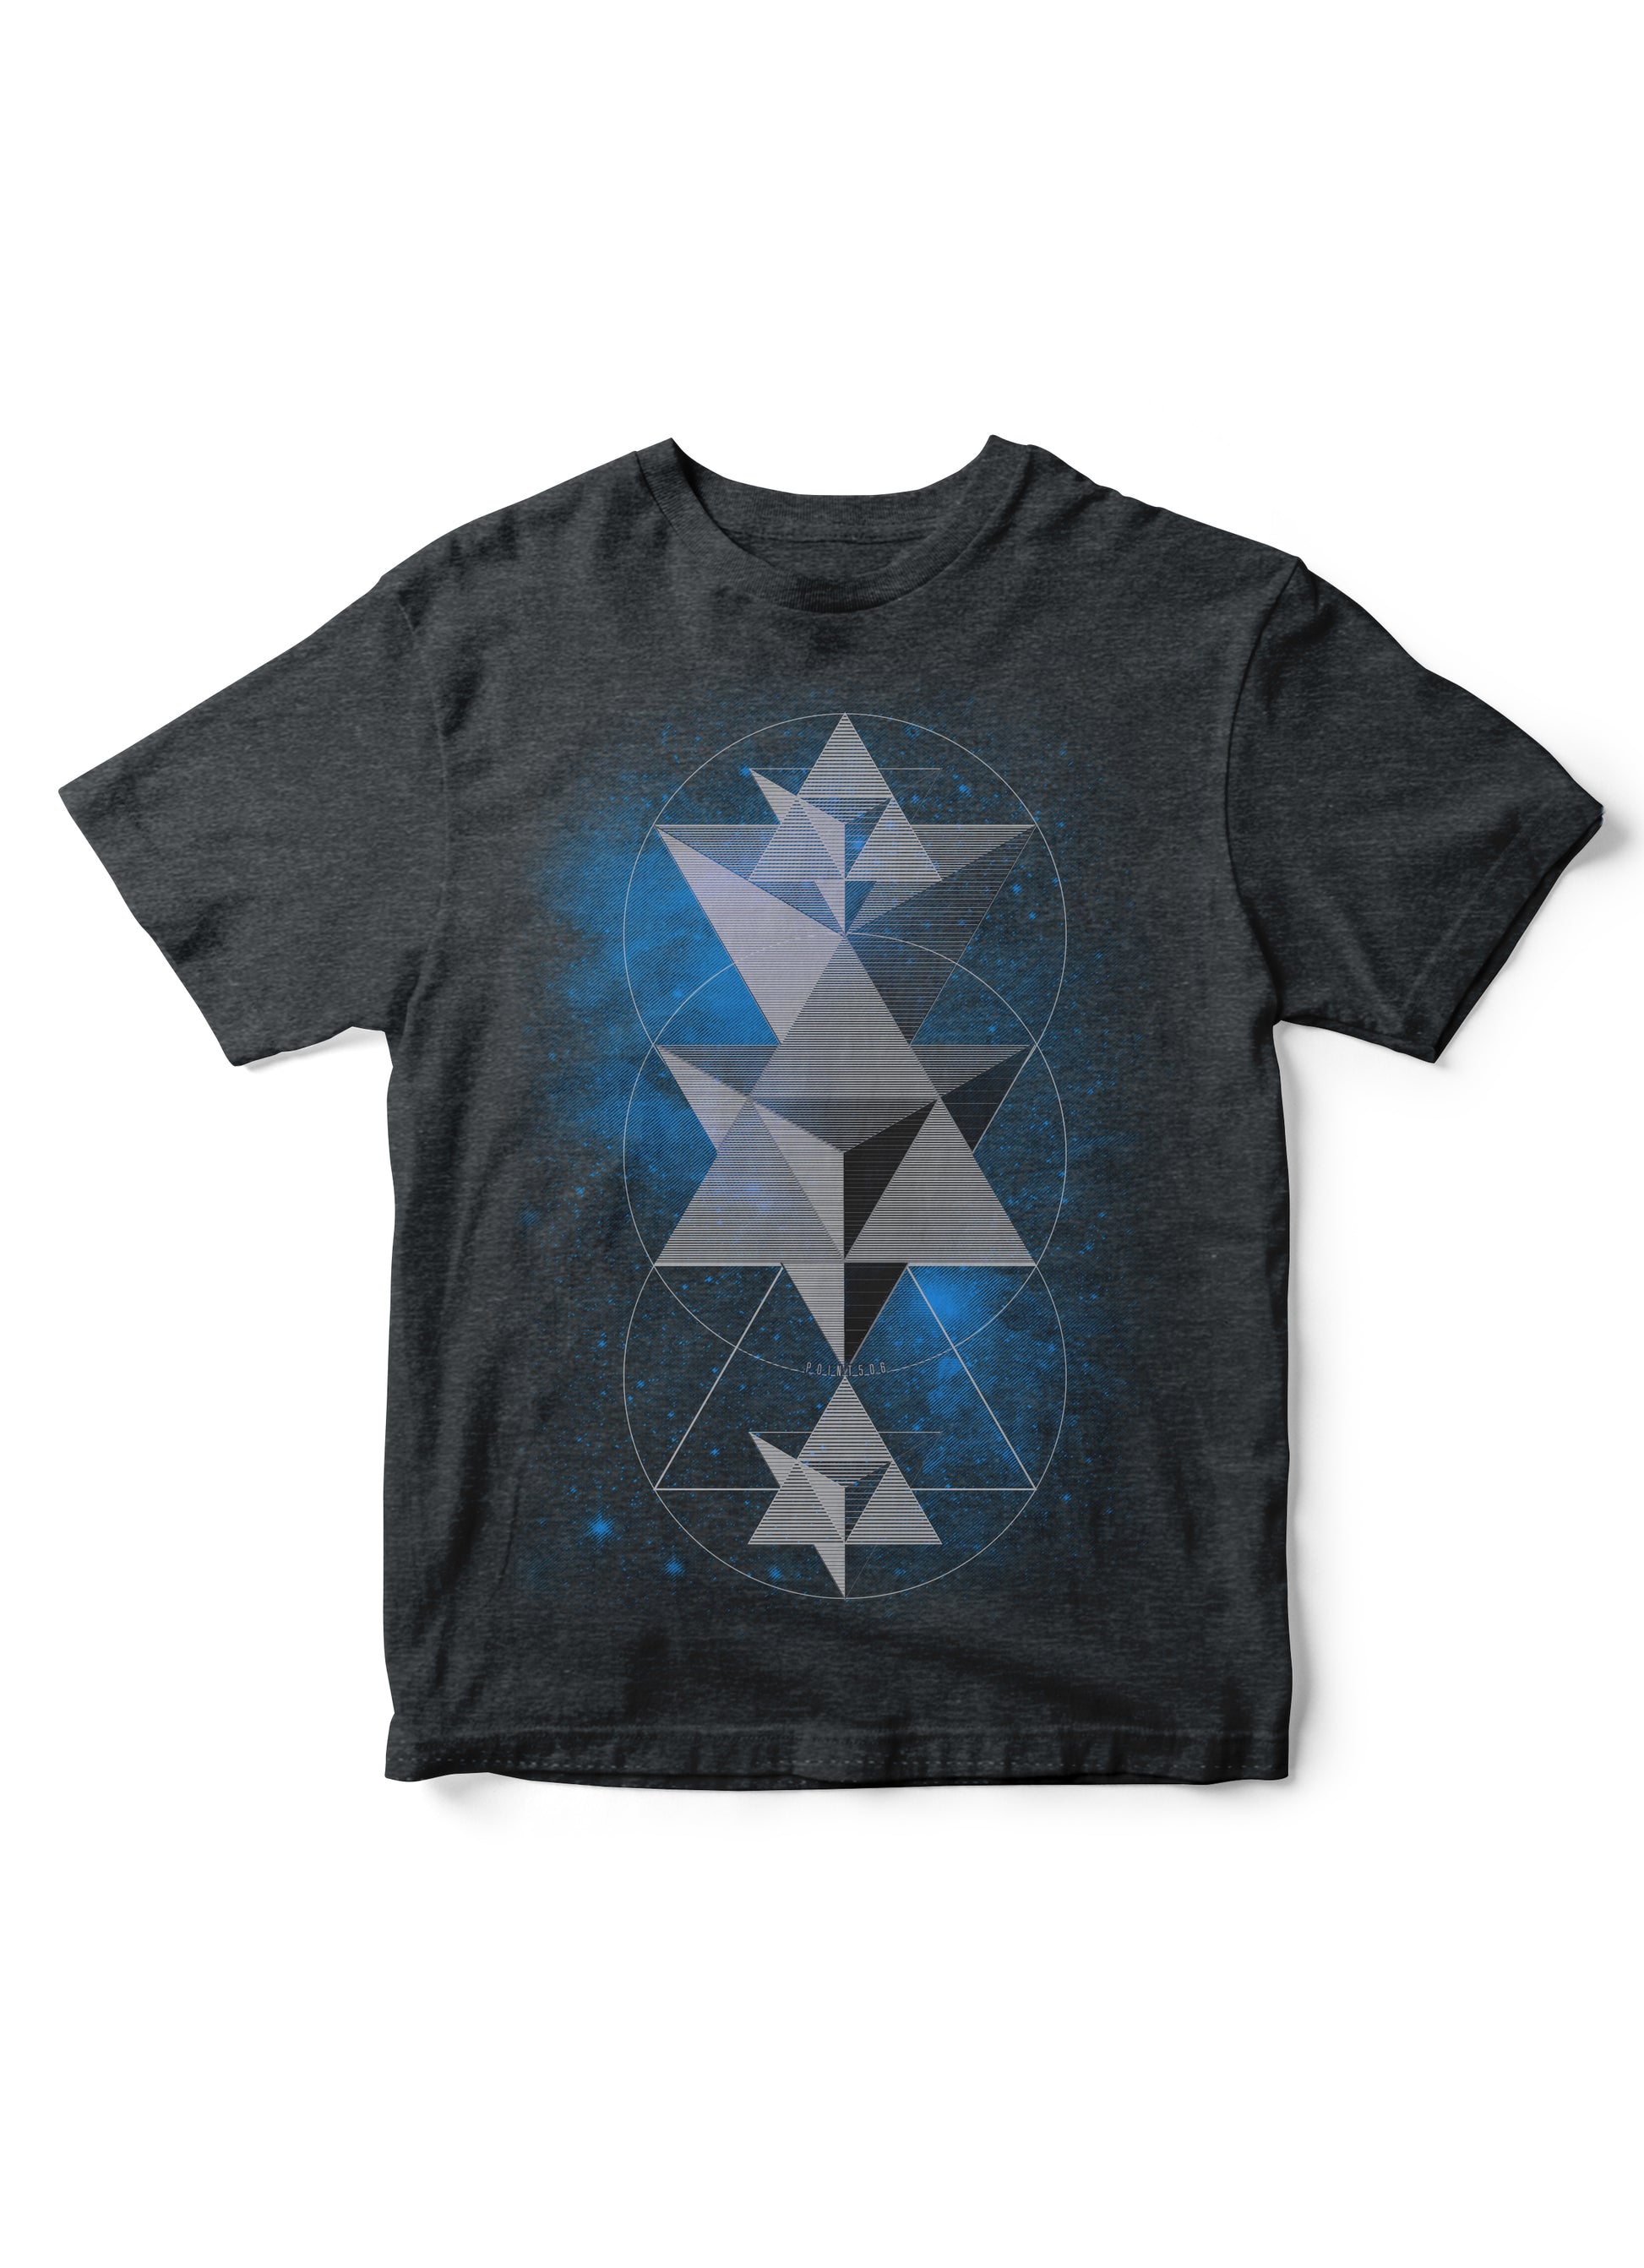 sacred geometry tshirt, geometric kid tshirt, math tshirt for kids, unique kid shirts